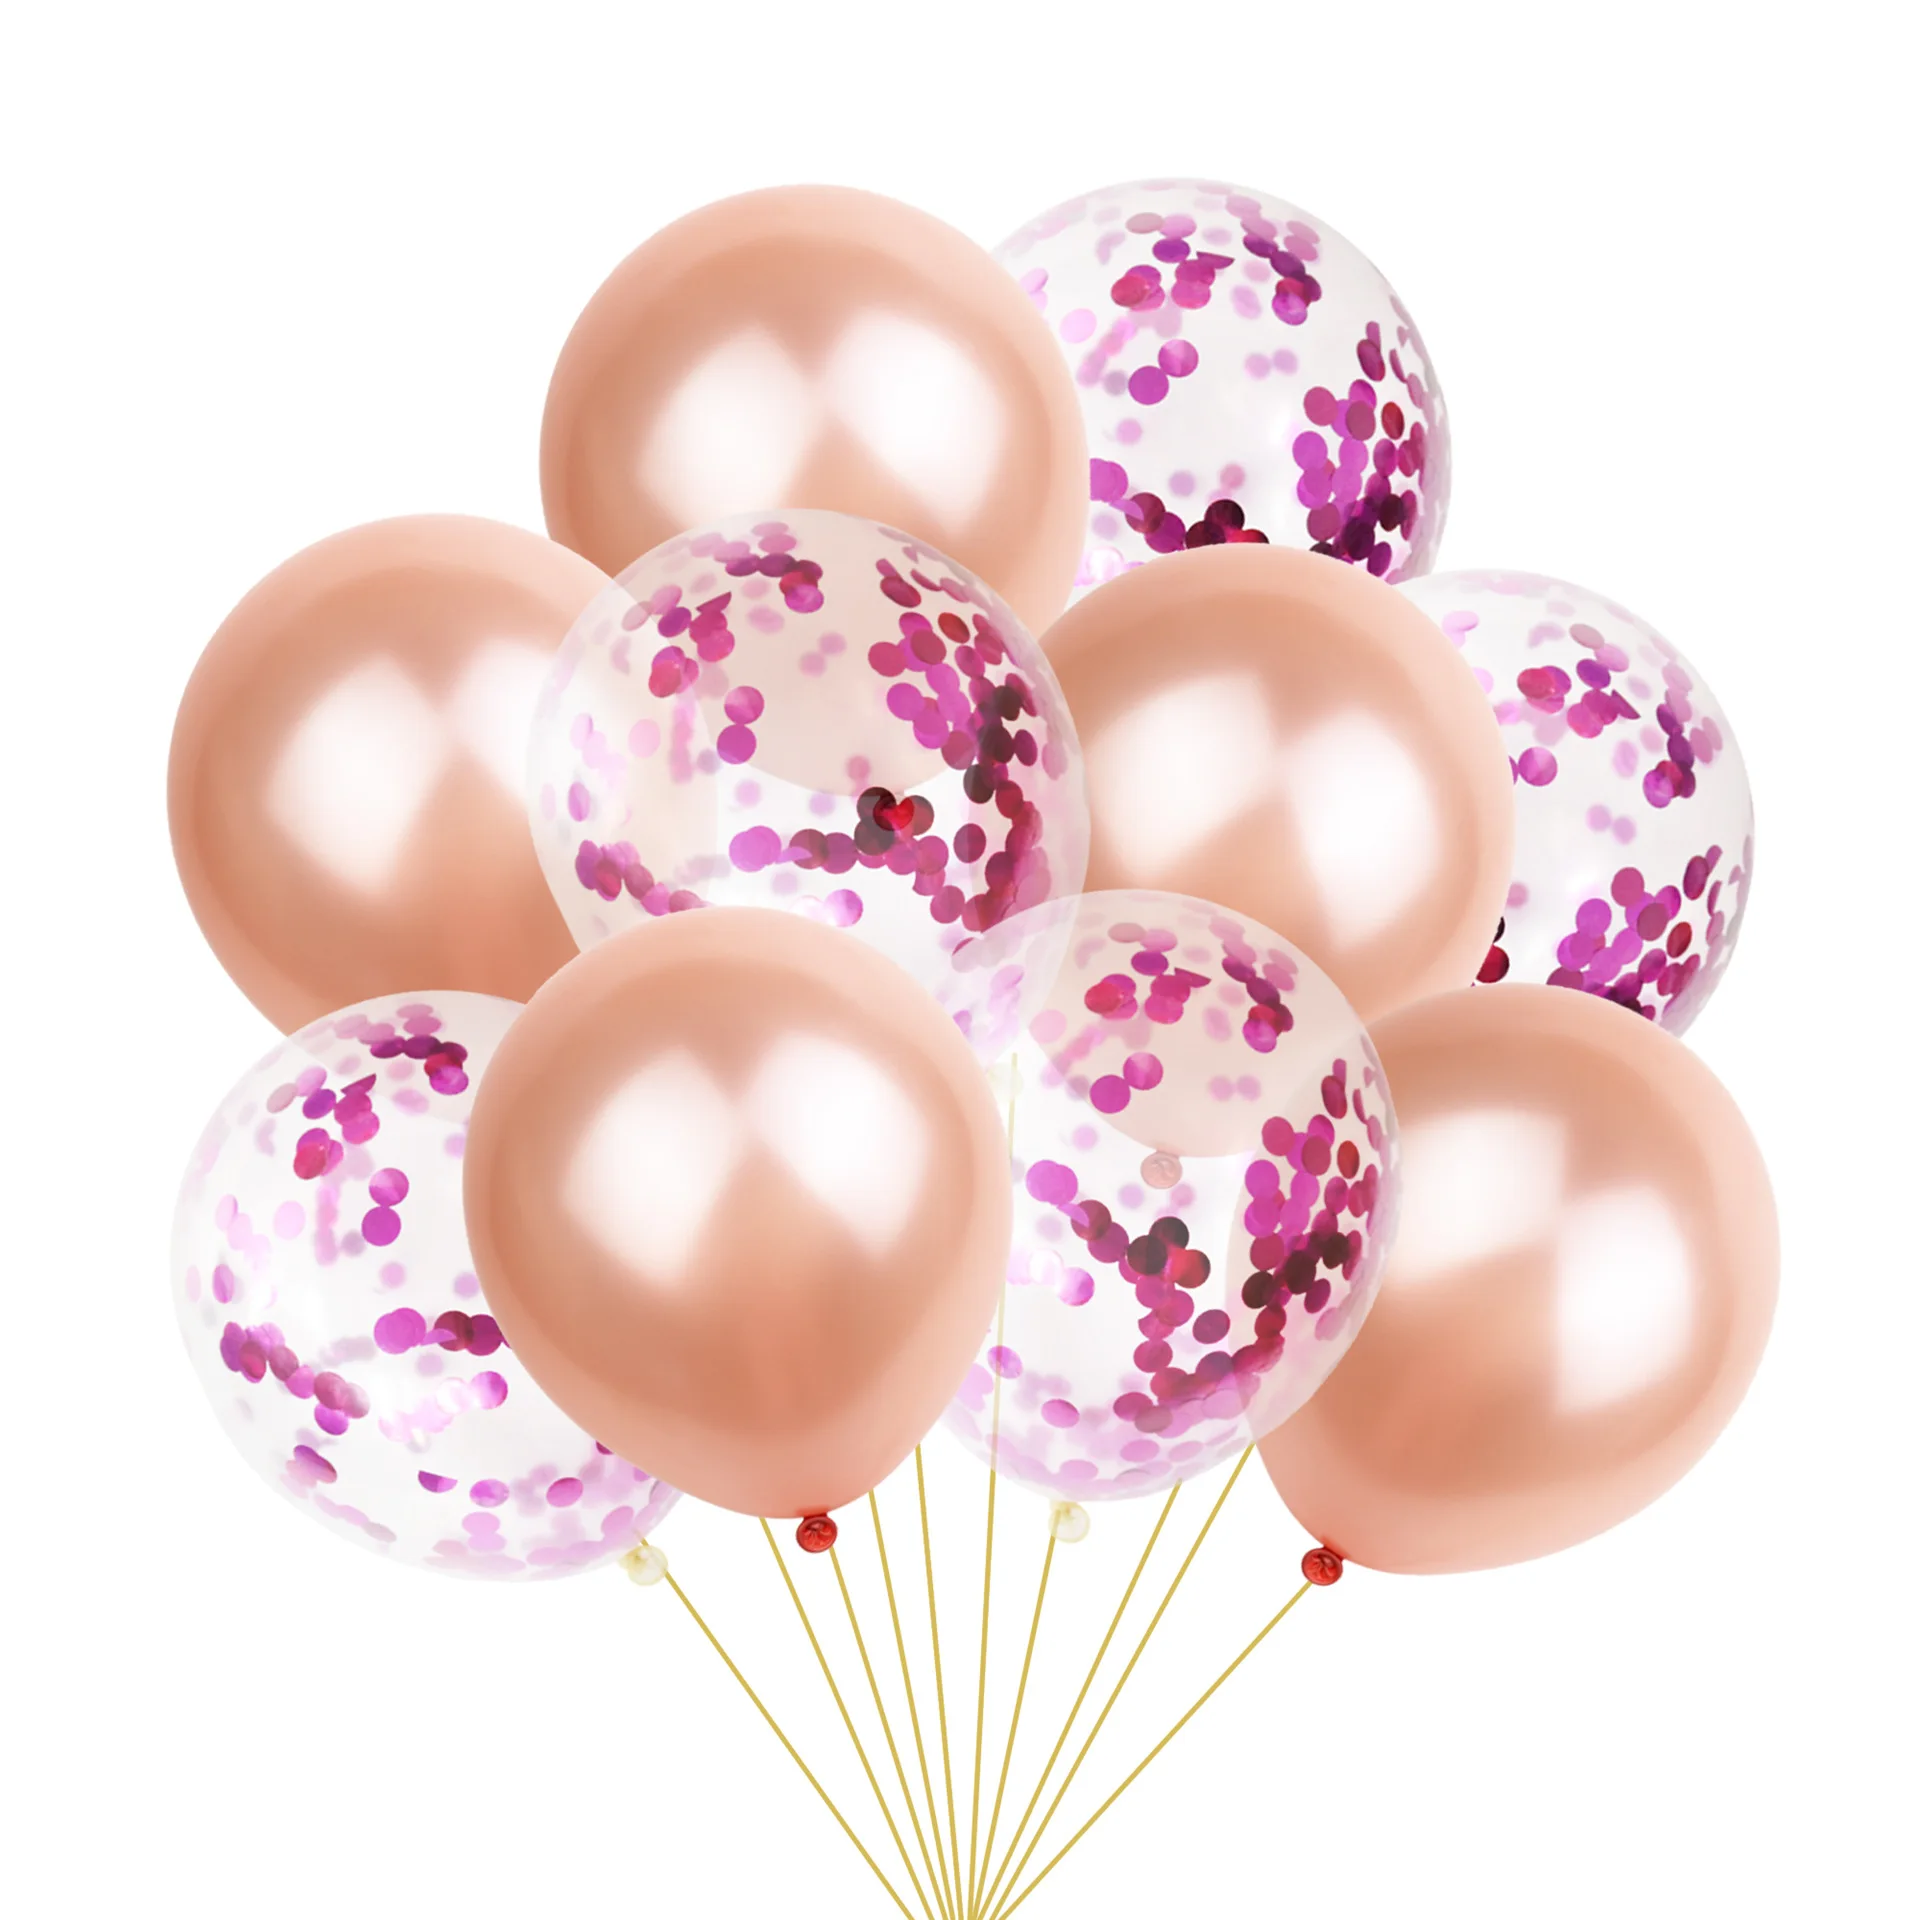 14 шт розовые и золотые воздушные шары набор конфетти воздушные шары для дня рождения вечерние украшения дети взрослые воздушные шары свадебный Декор поставки C6MZ - Цвет: wedding ballons 9